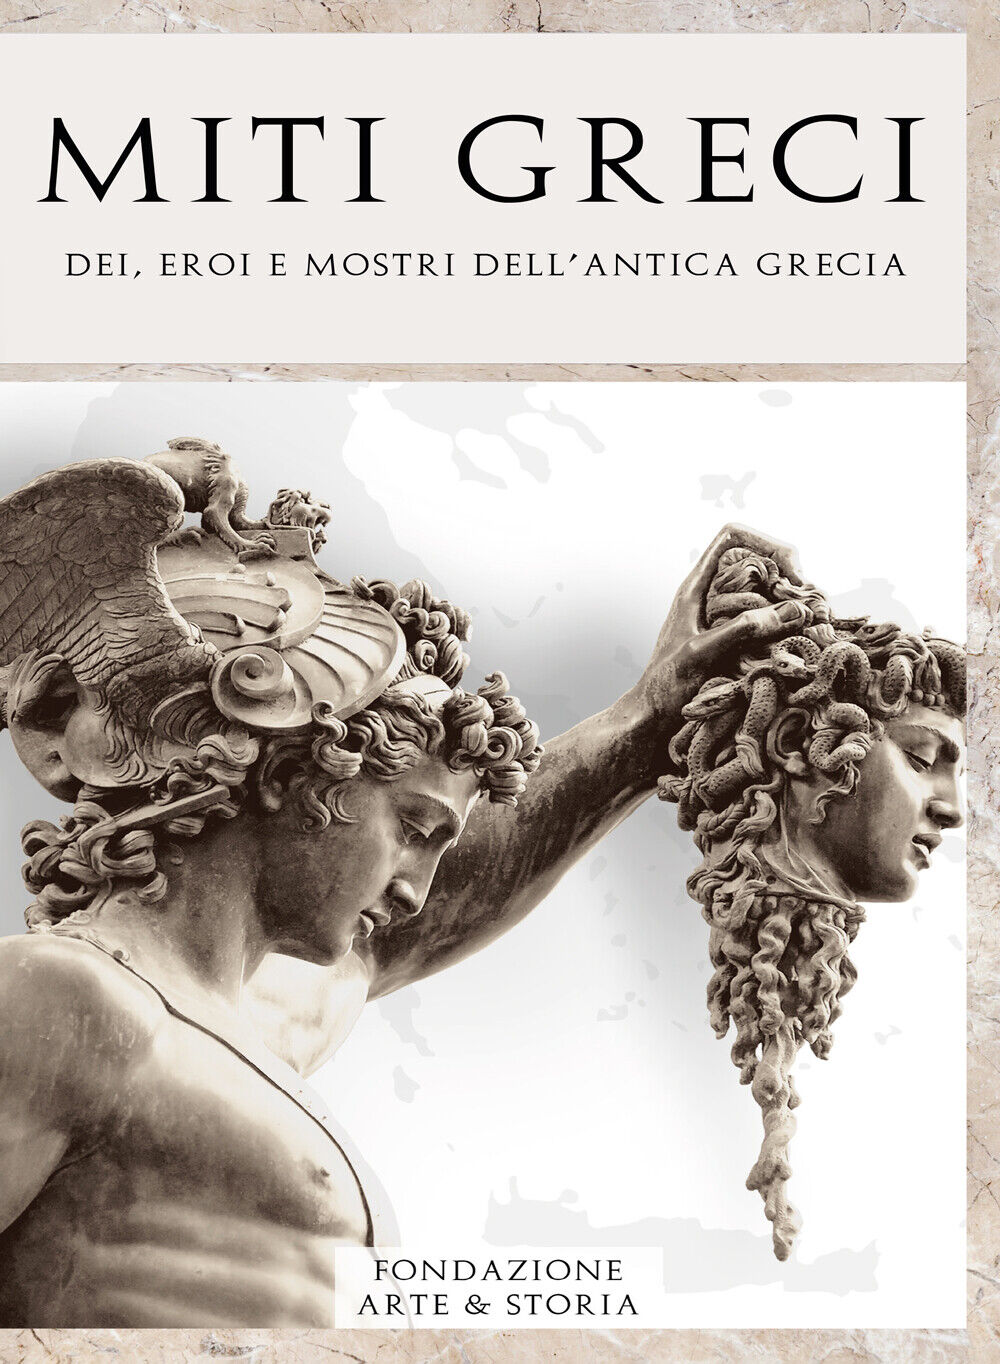 Miti greci. Dei, eroi e mostri delL'antica Grecia di Fondazione Arte & Storia, 2 libro usato